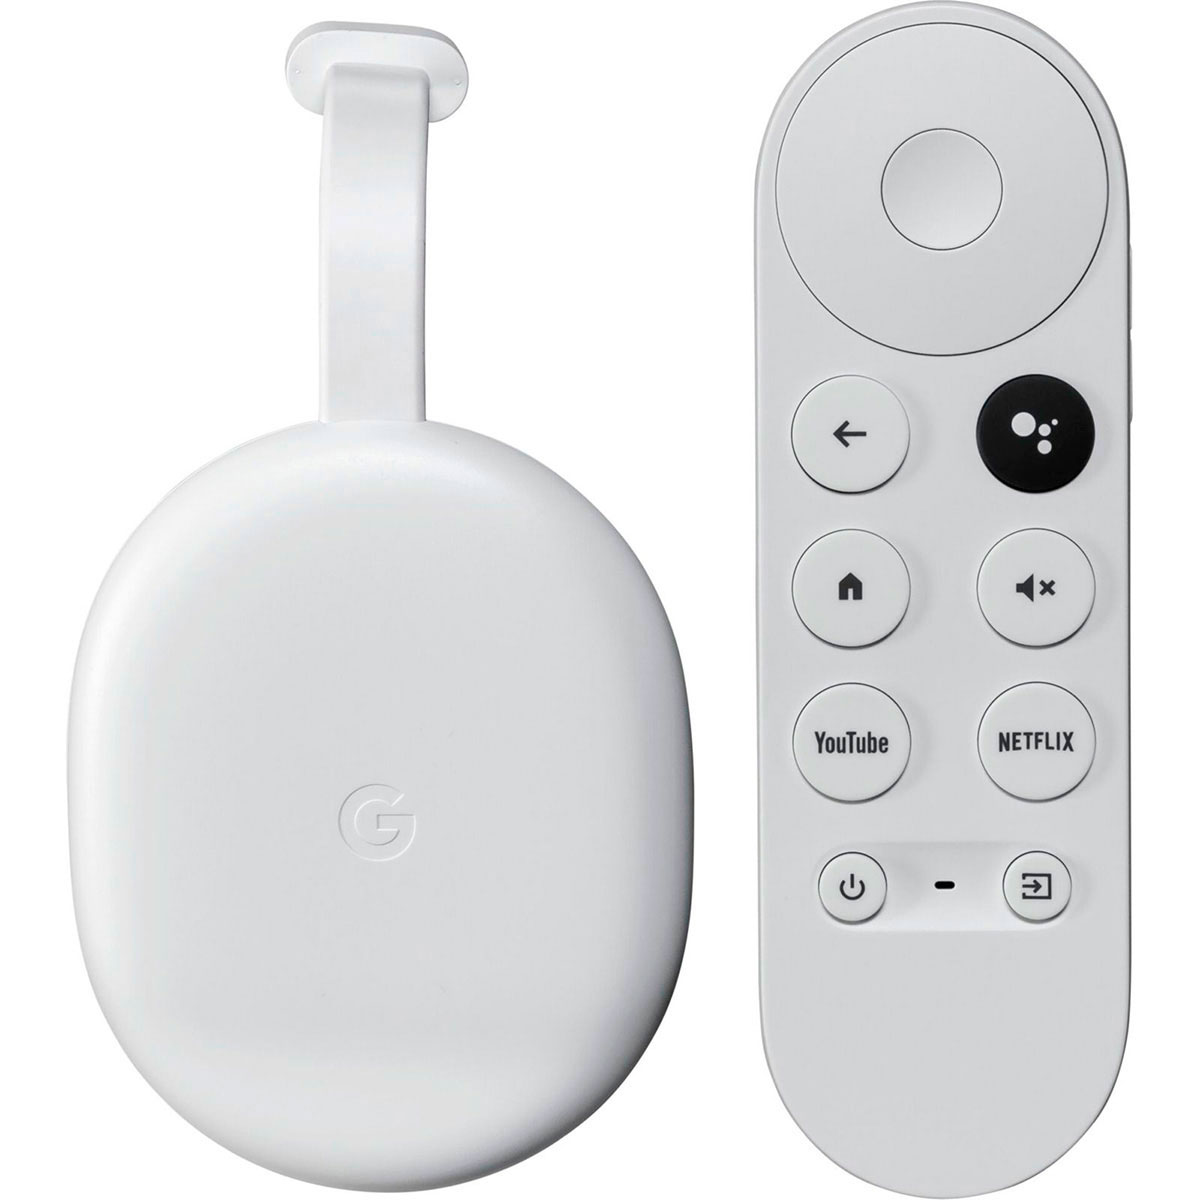 føle sikring kubiske Google Chromecast m/Google TV 4K HDR (m/fjernbetjening) Hvid